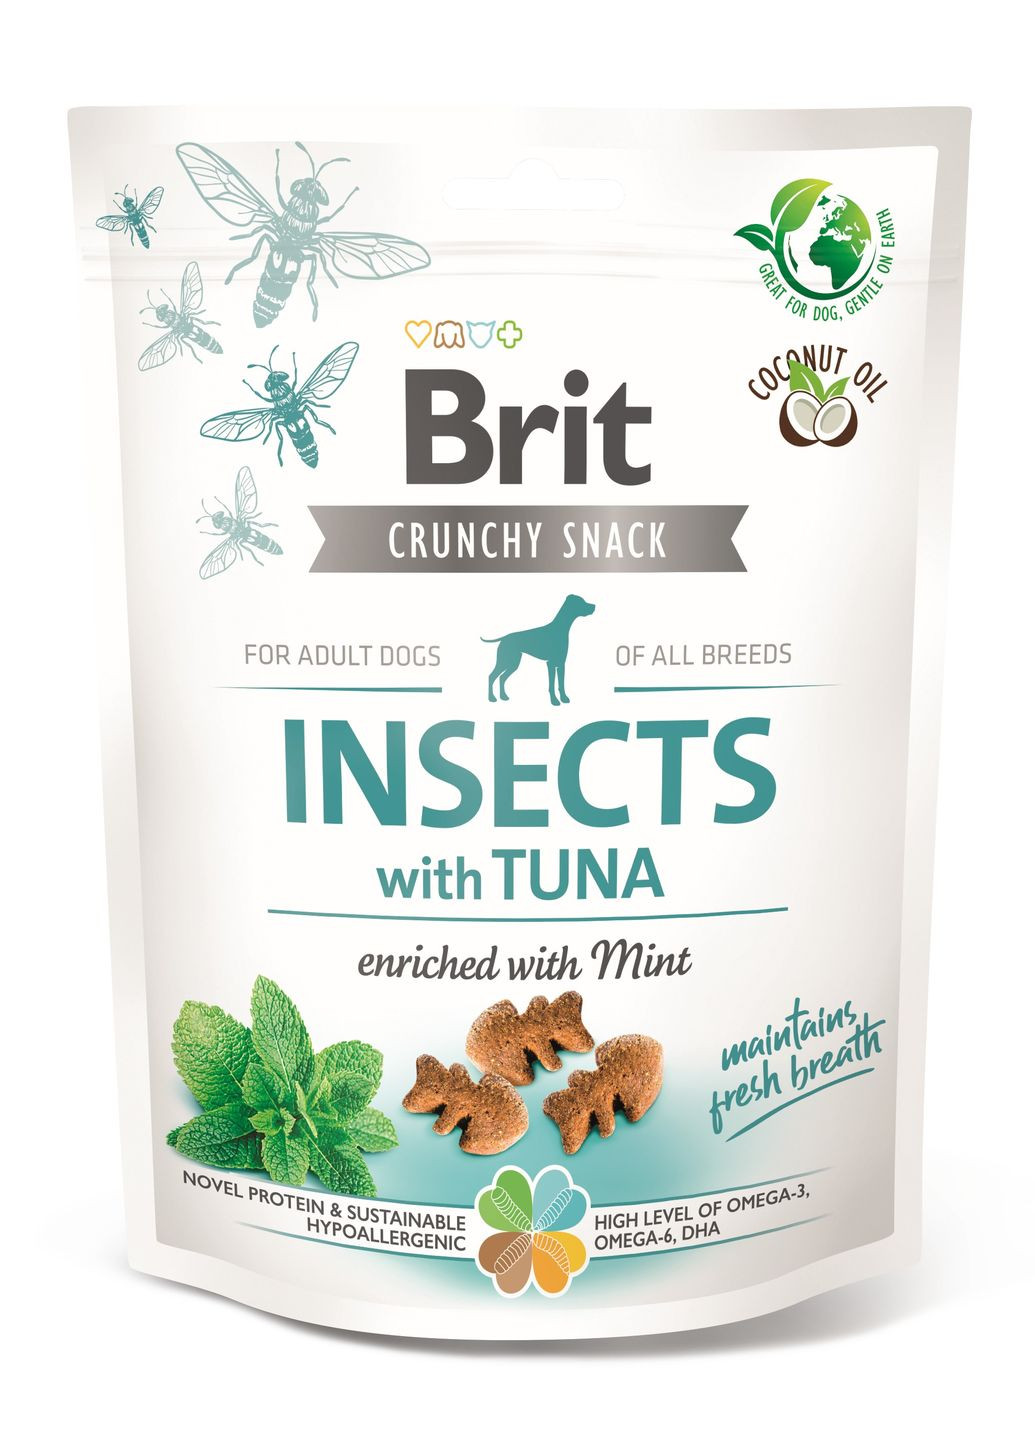 Лакомства для собак Care Dog Crunchy Cracker Insects with Tuna для свежести дыхания насекомые, тунец и мята, 200 г Brit (266900392)